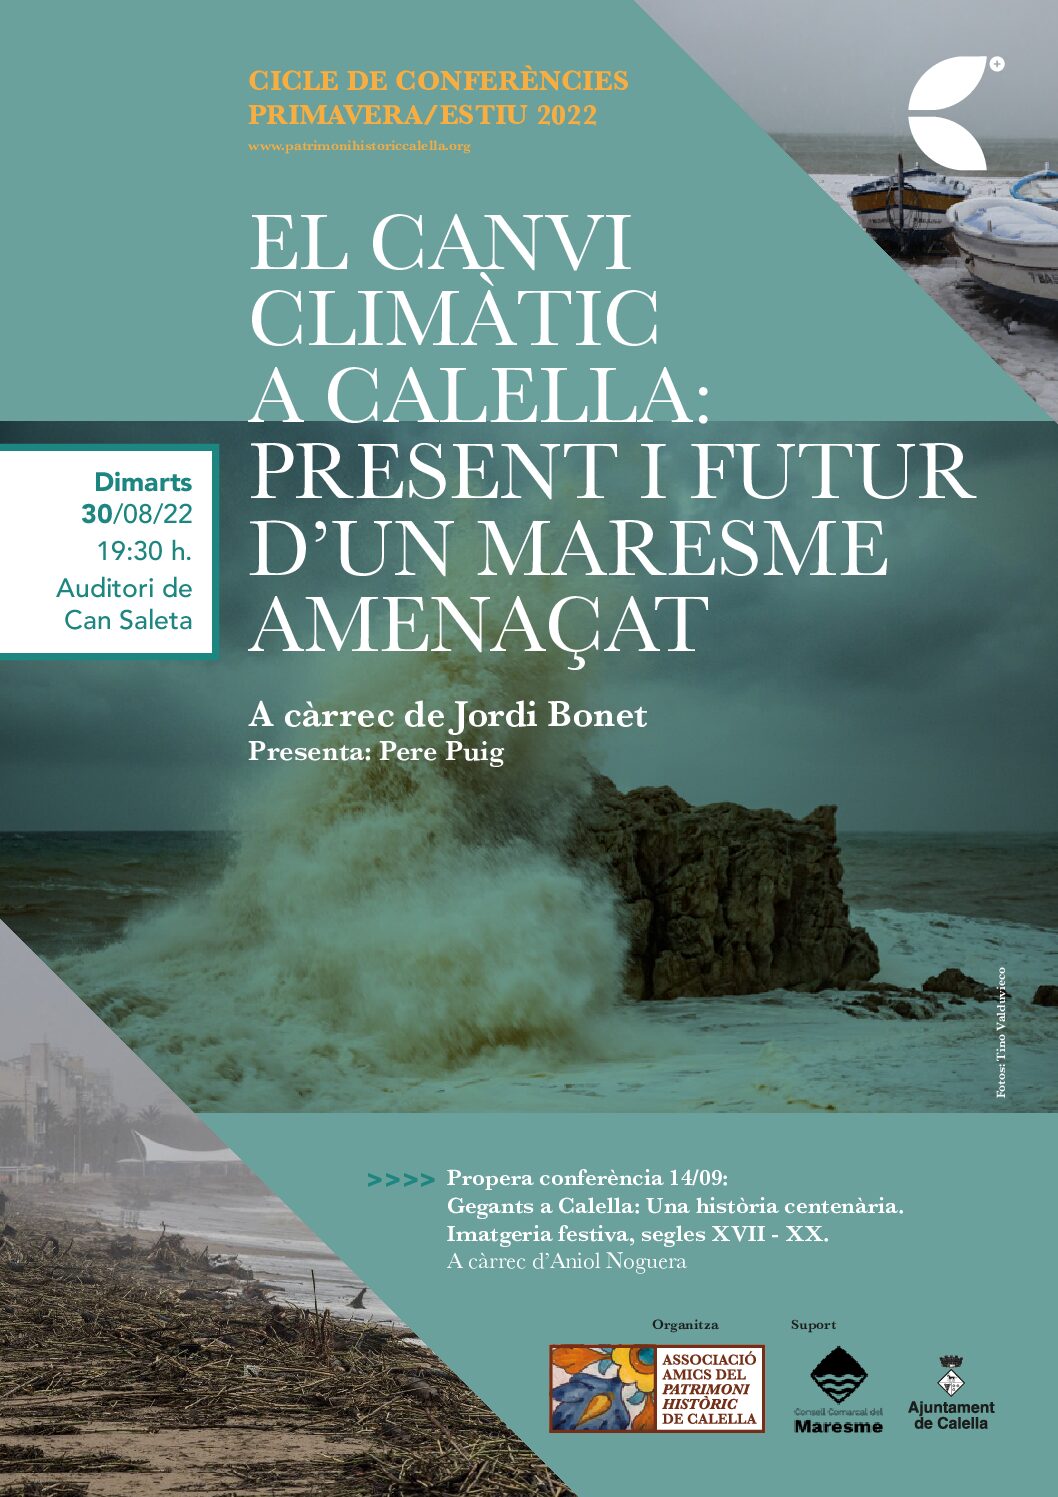 Nova conferència organitzada per l’AAPHC: “EL CANVI CLIMÀTIC A CALELLA: PRESENT I FUTUR D’UN MARESME AMENAÇAT”, a càrrec de Jordi Bonet